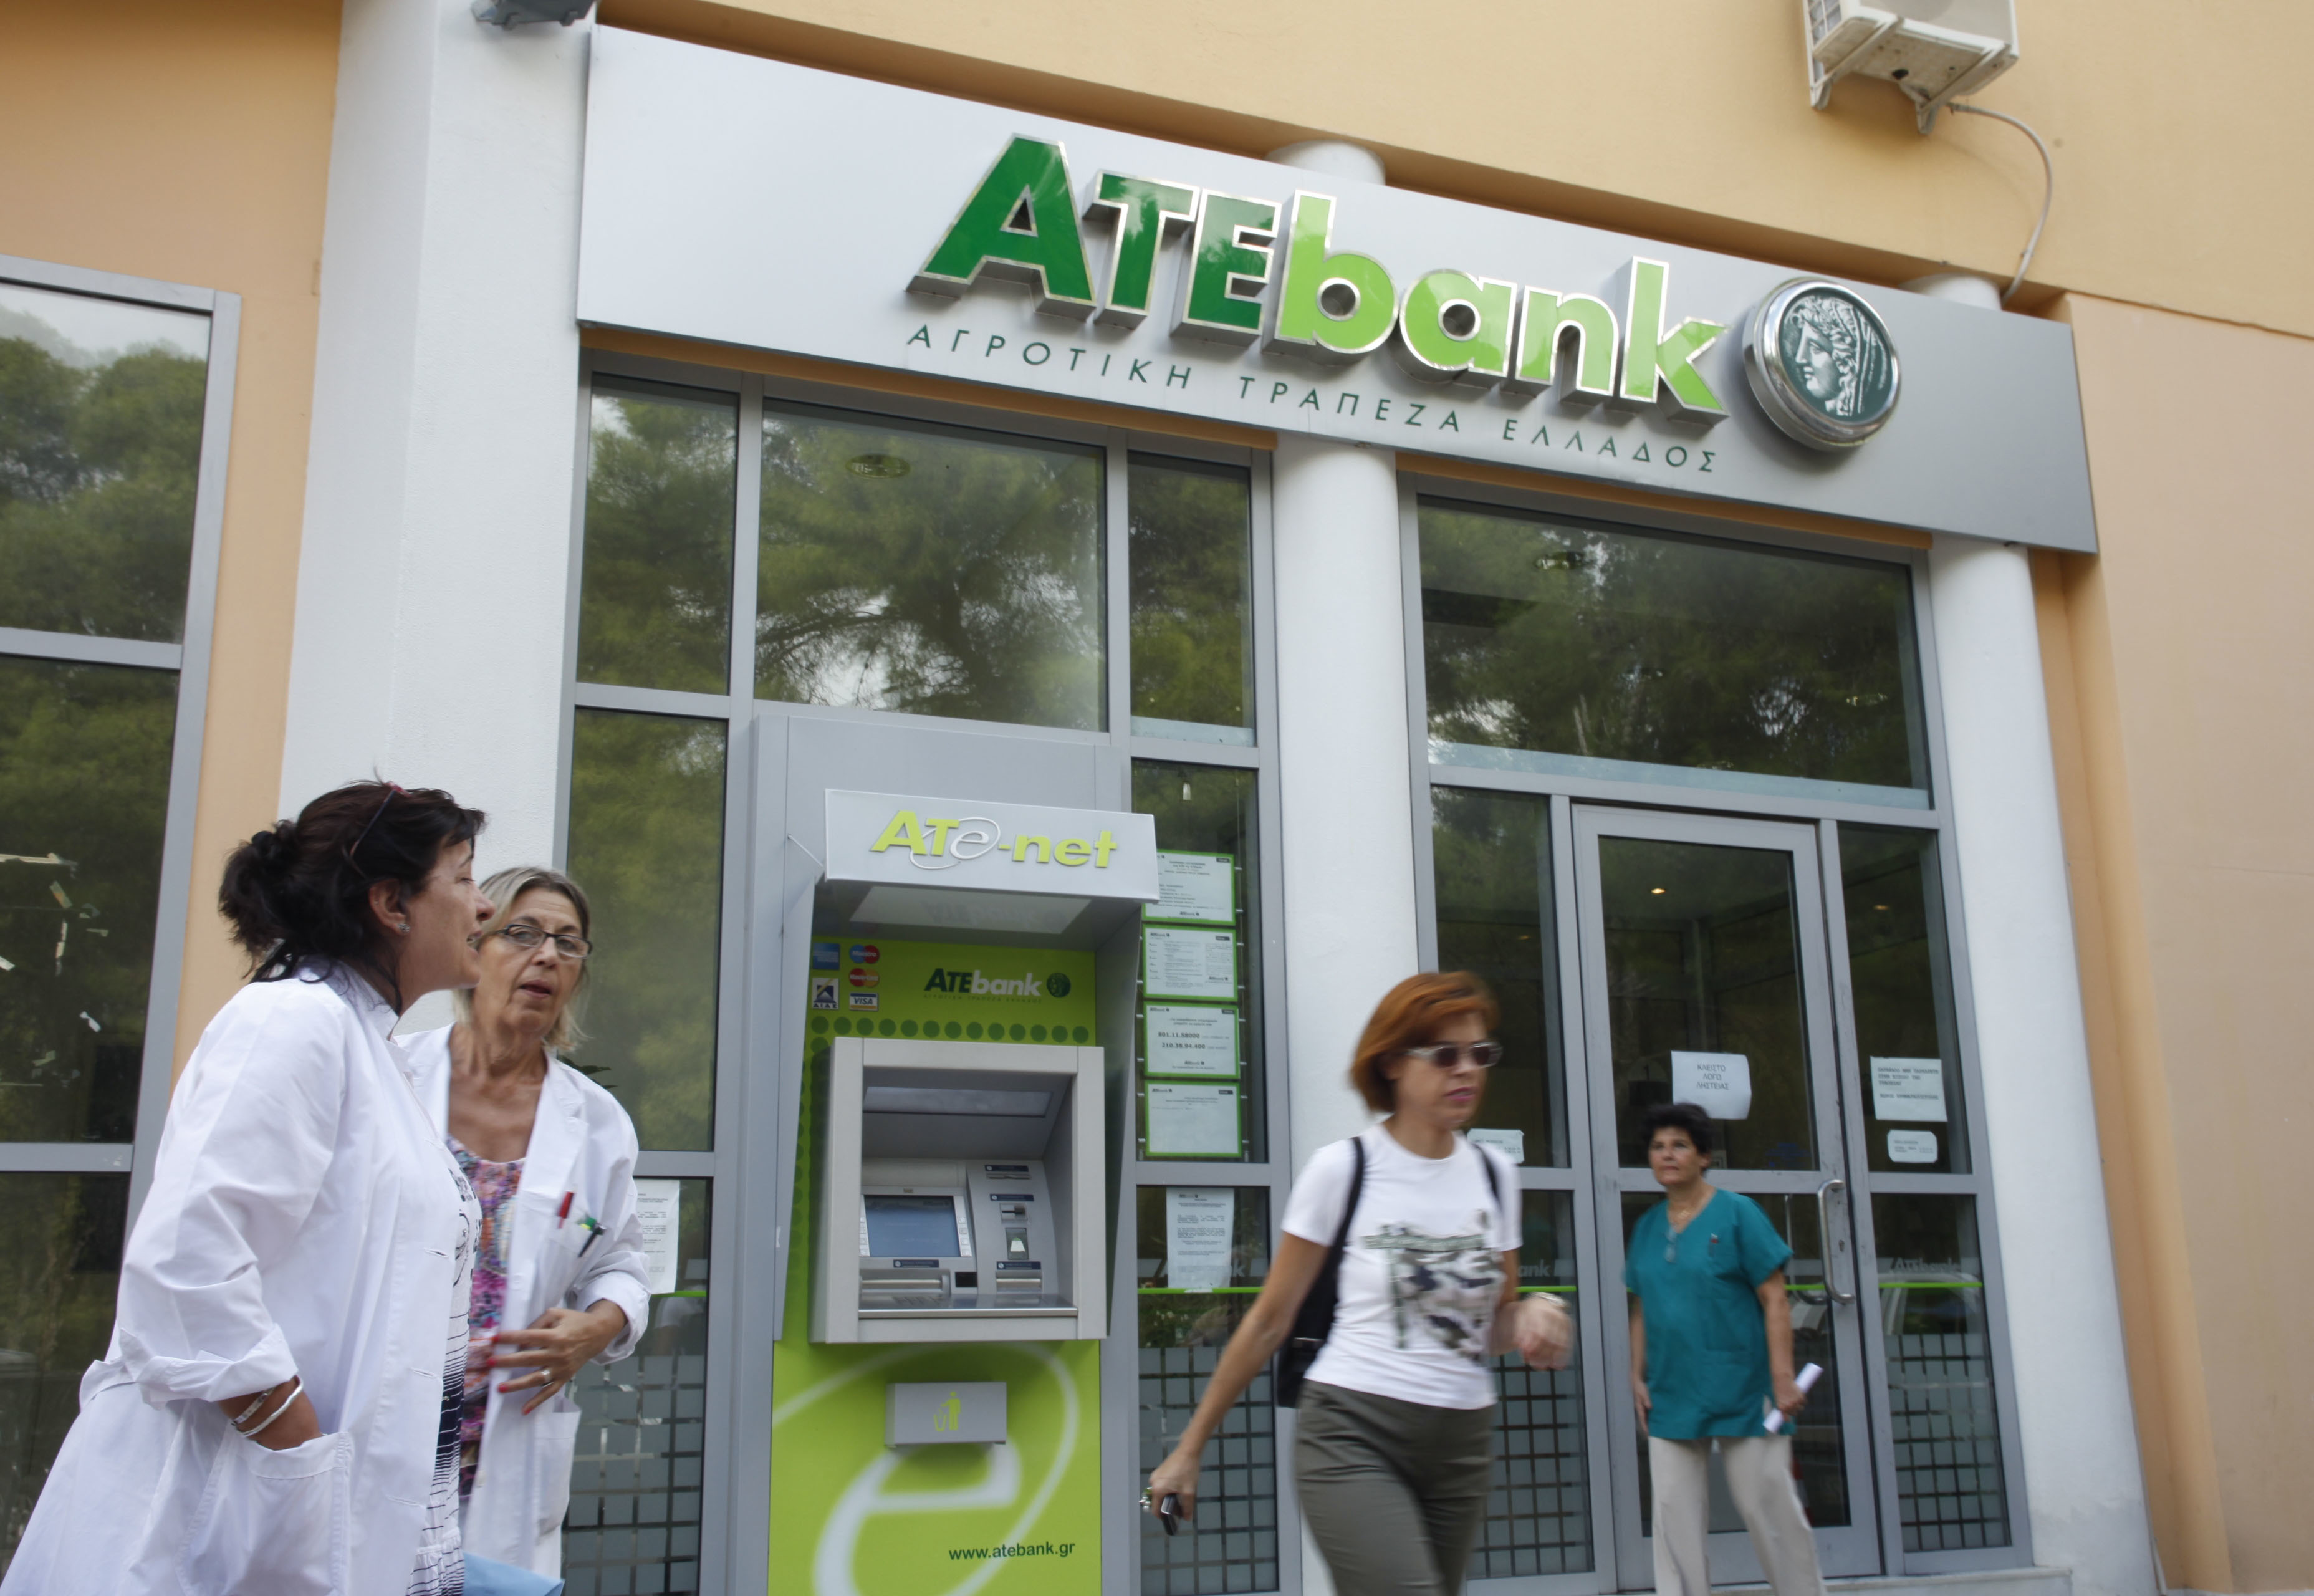 Ιδιωτική θέλει την ATE BANK η τρόικα – Σε συναγερμό οι εργαζόμενοι